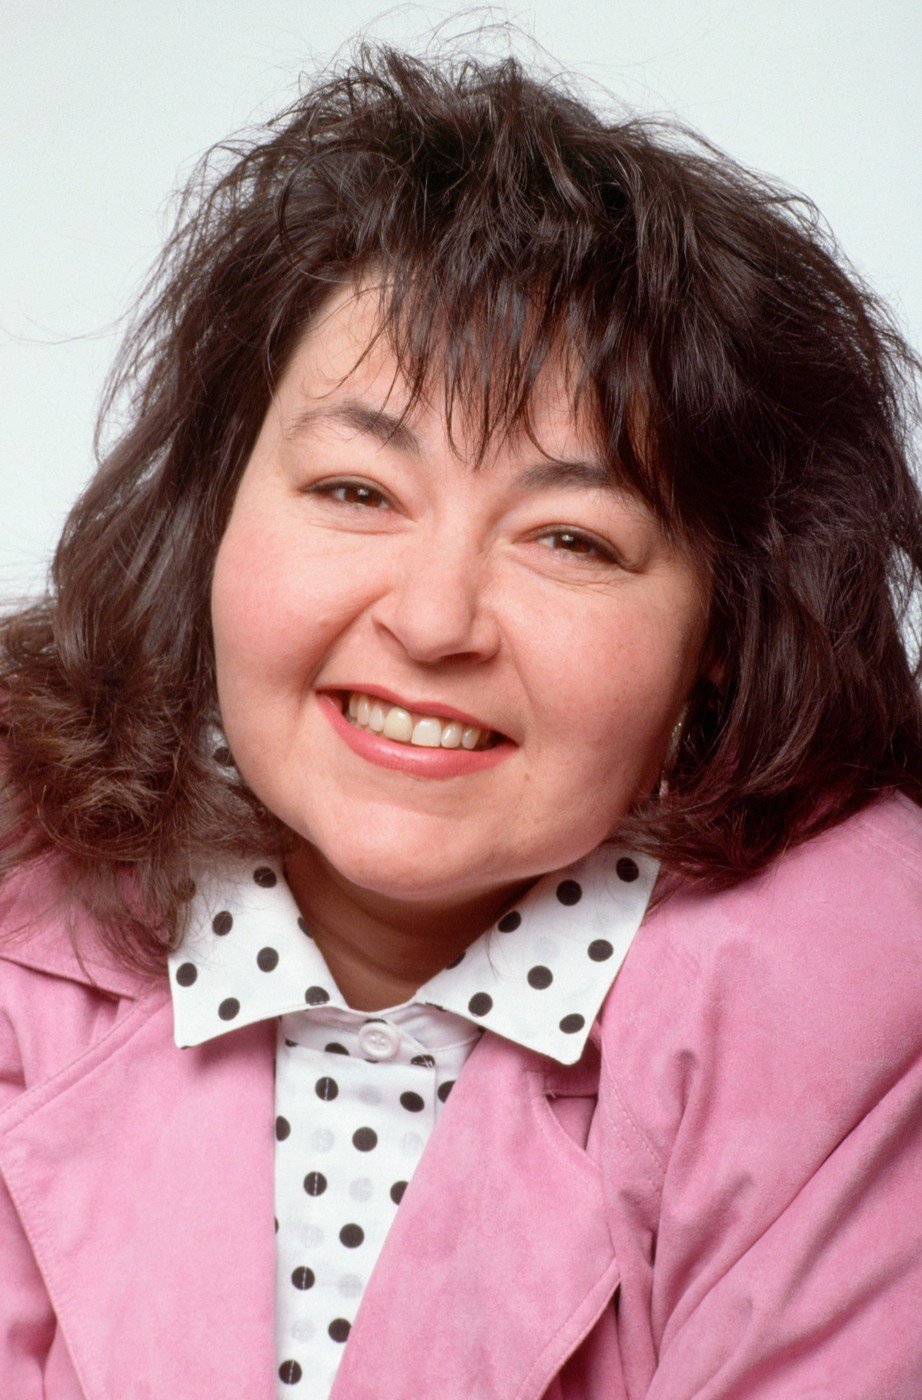 Takto Roseanne vypadala v dobách největší slávy svého sitcomu.